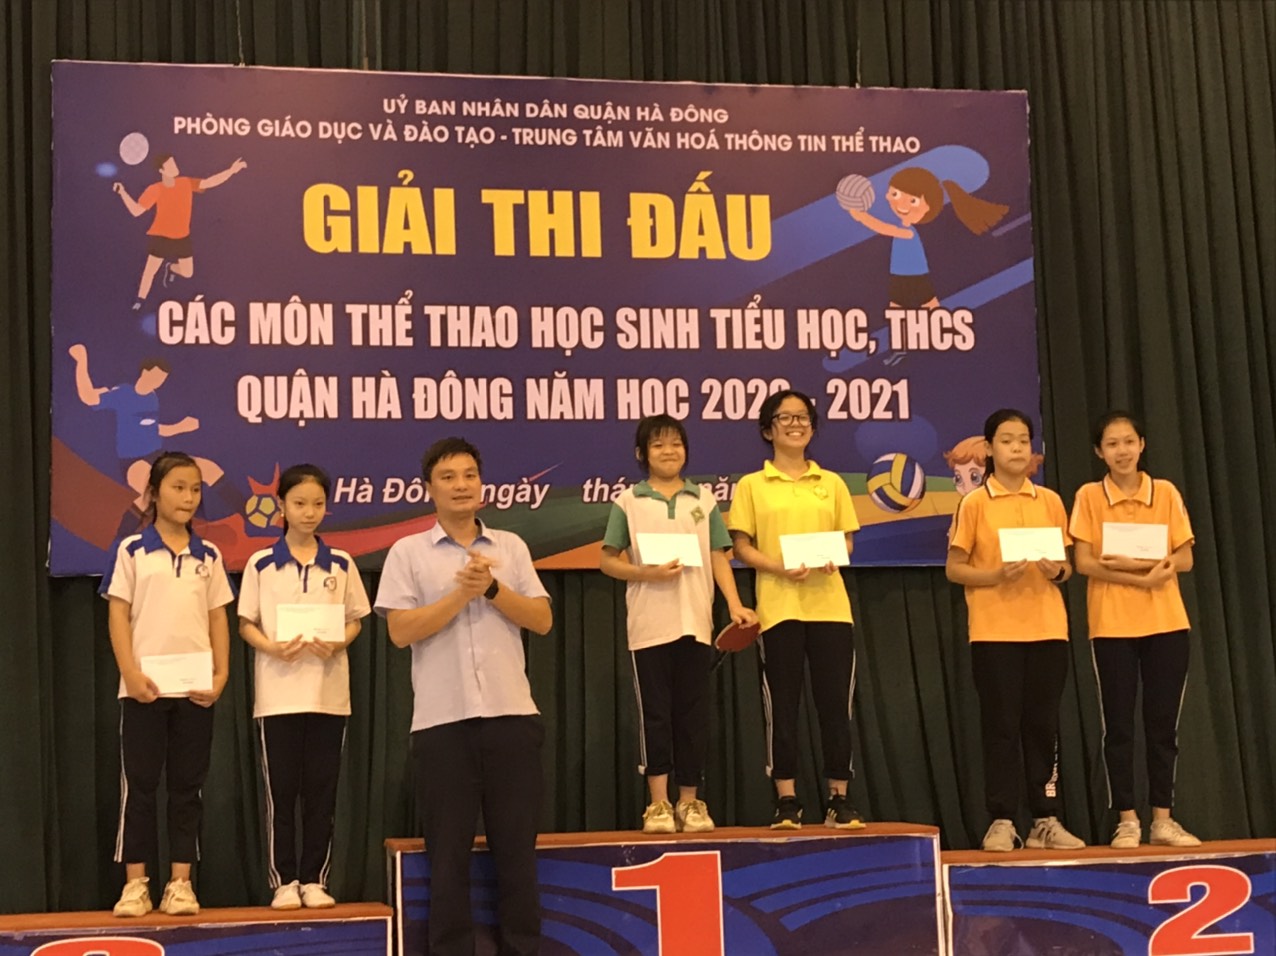 Phong trào TDTT học đường và những thành tích đã đạt được của trường THCS Văn Yên trong giải thi đấu các môn thể thao học sinh tiểu học, THCS Quận Hà Đông